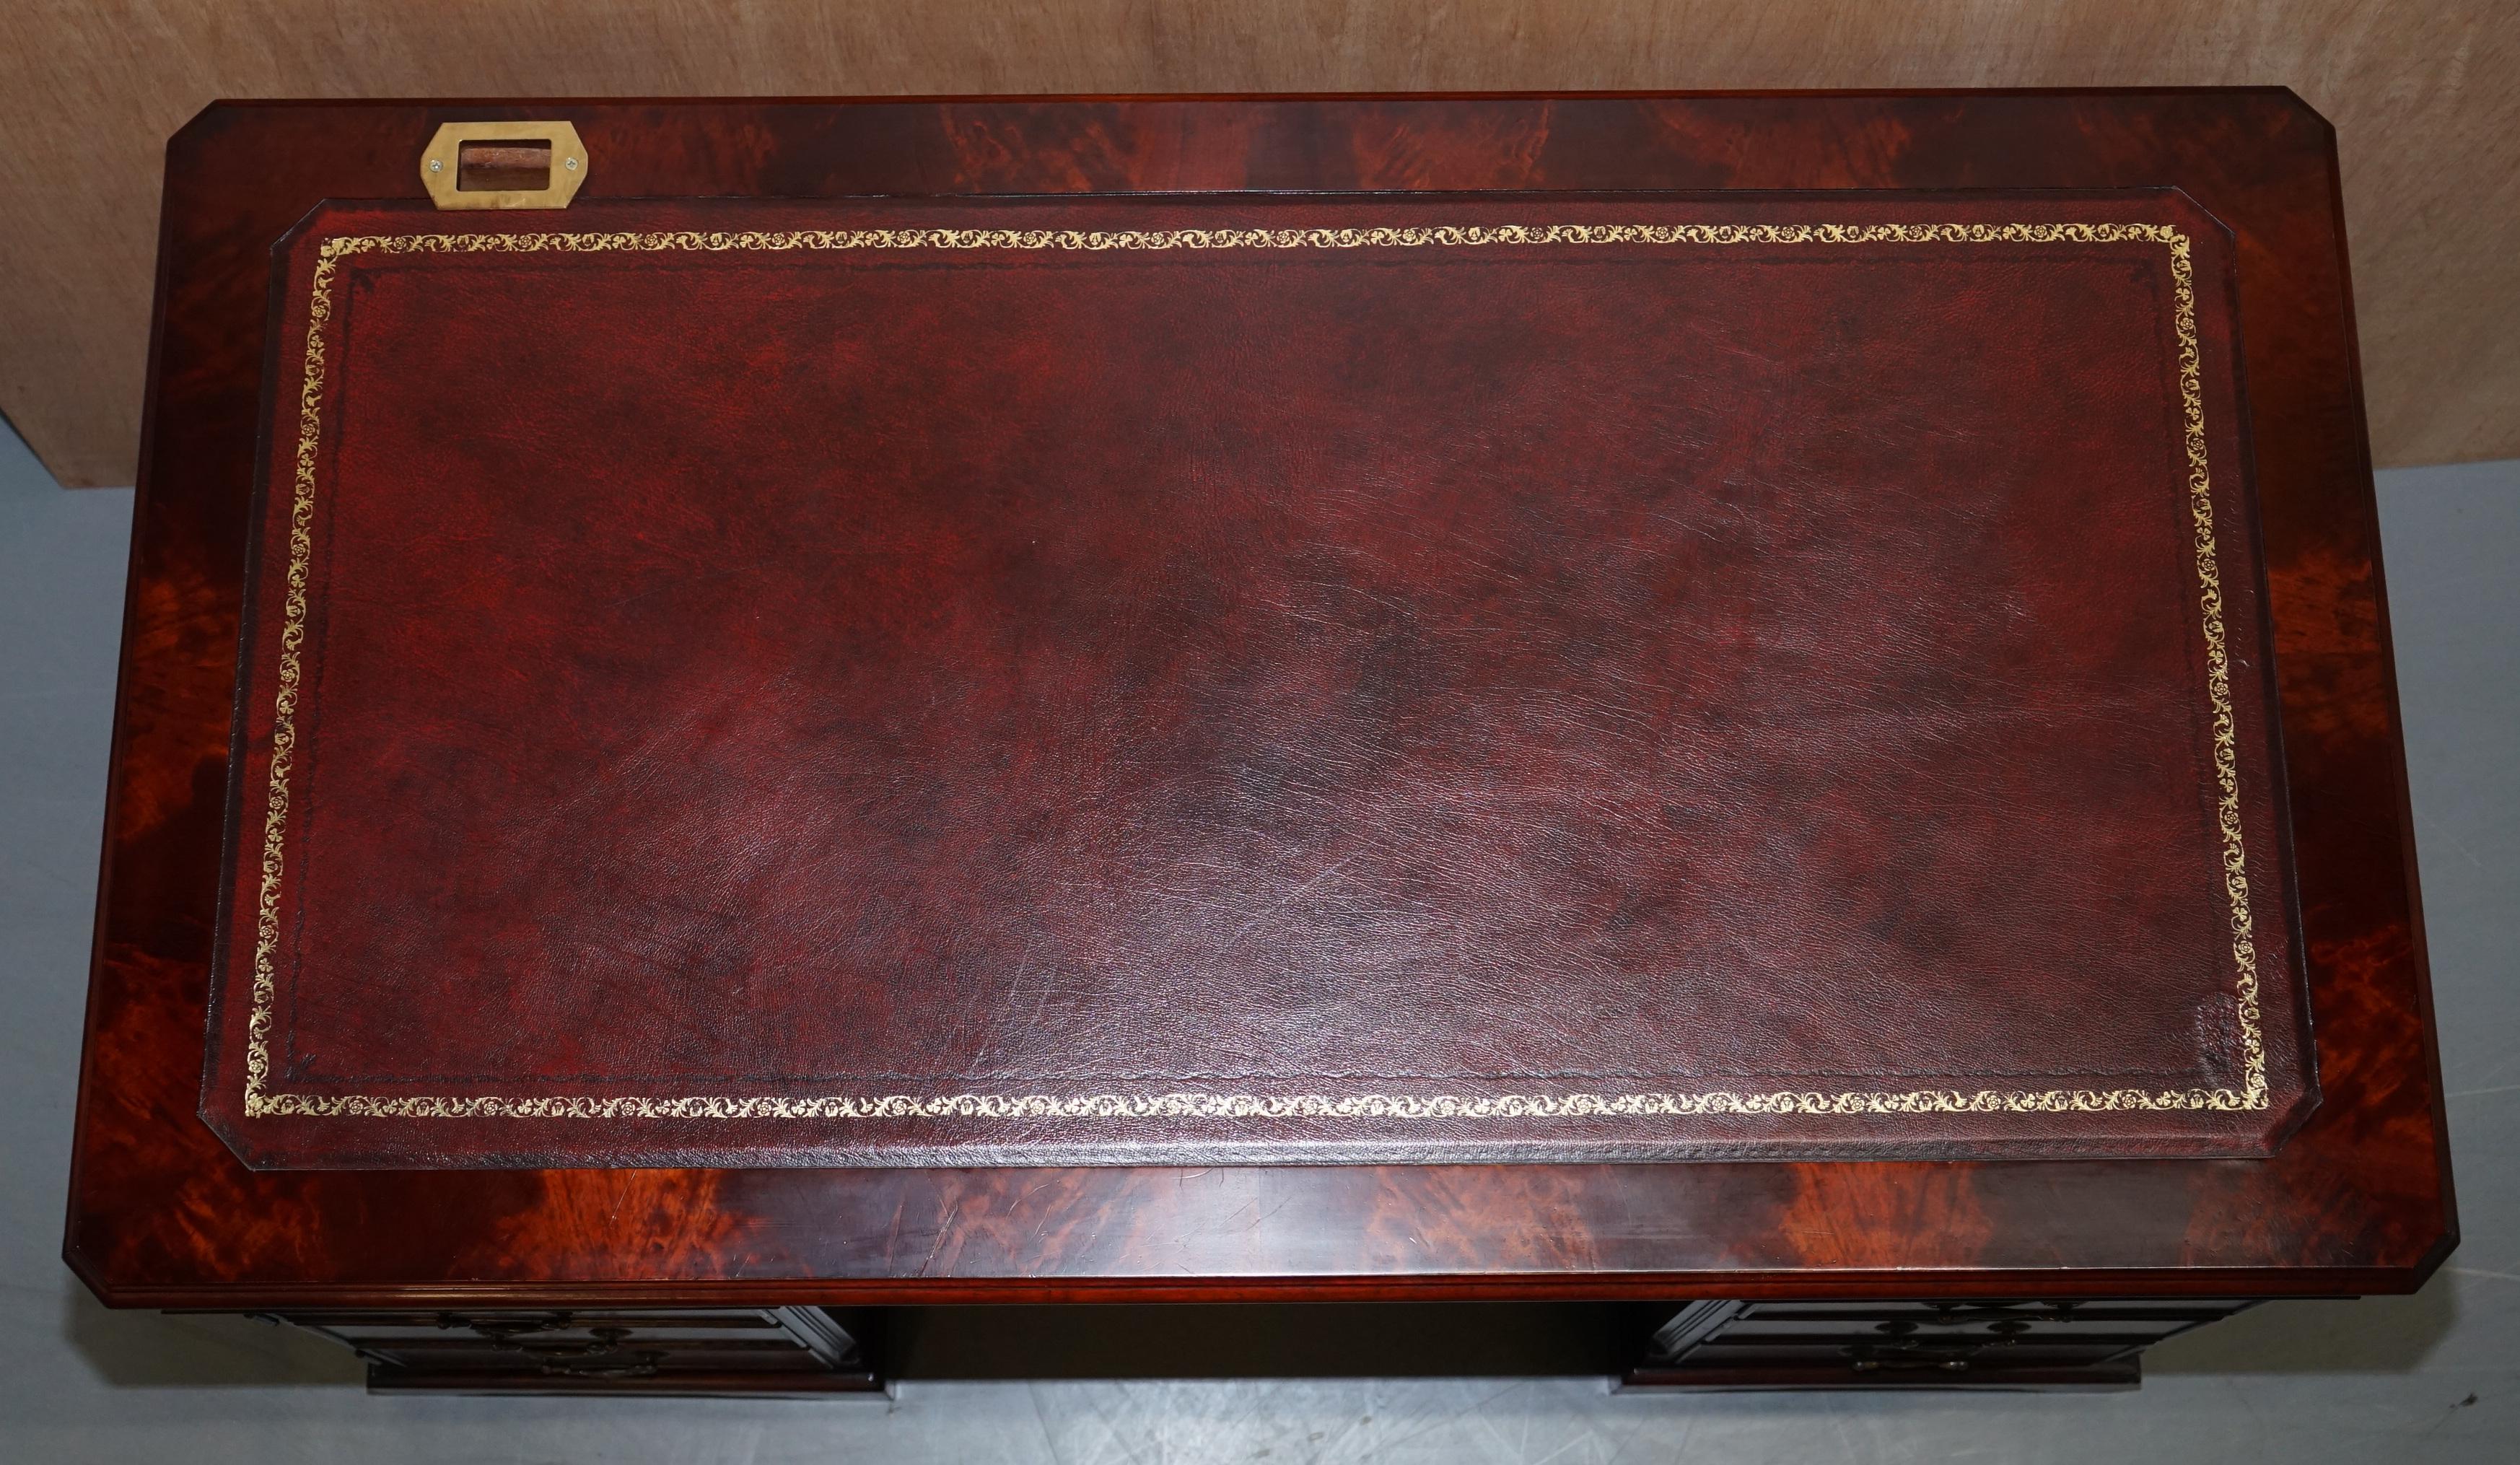 Modern Luxury Flamed Hardwood Oxblood Leather Twin Pedestal Partner Desk Keyboard Shelf